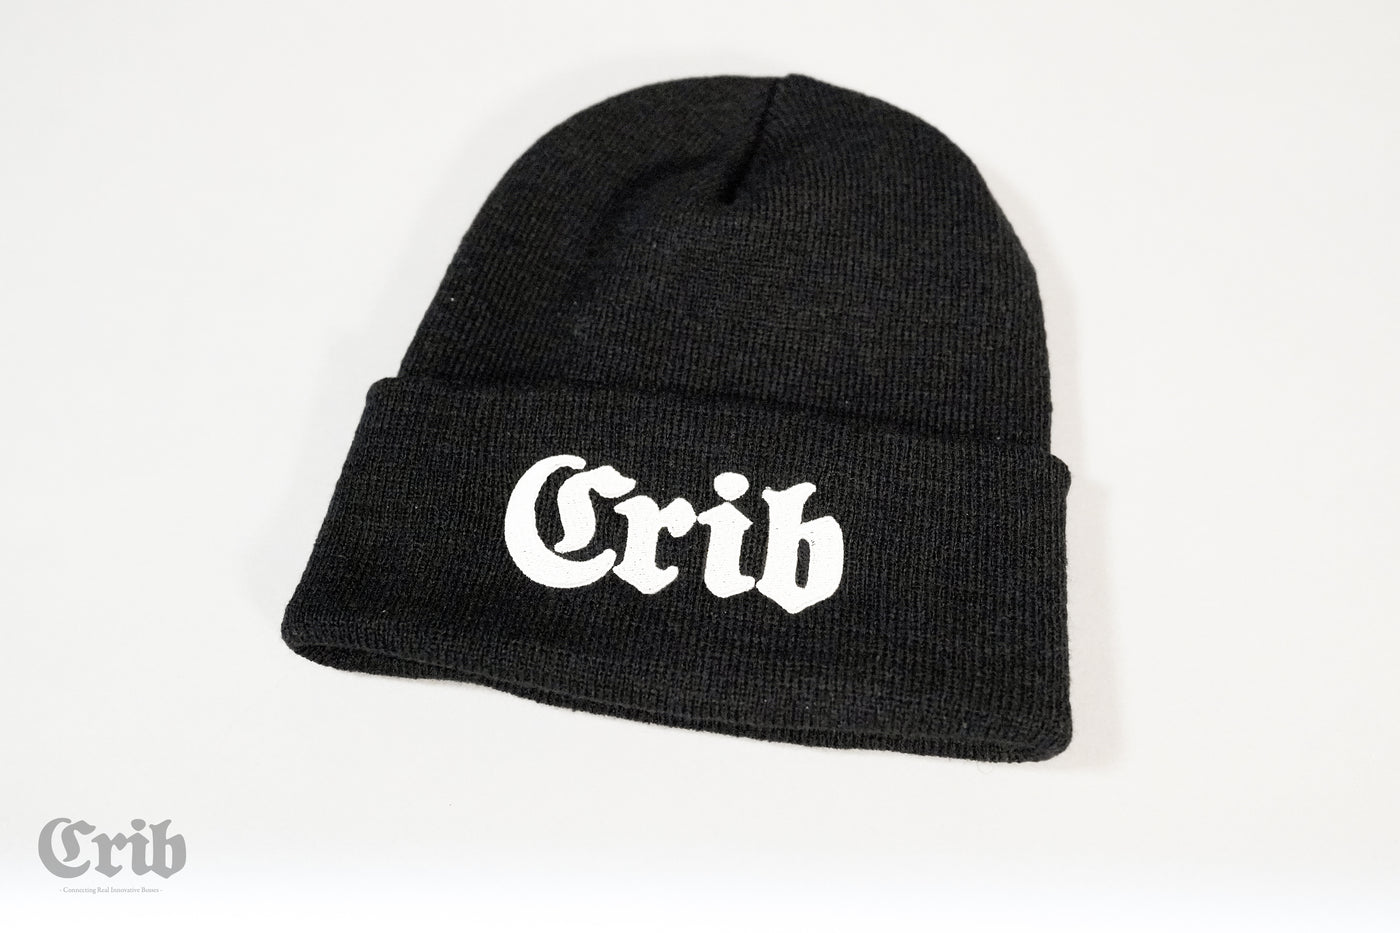 Crib Original Beanie – CRIB 1992